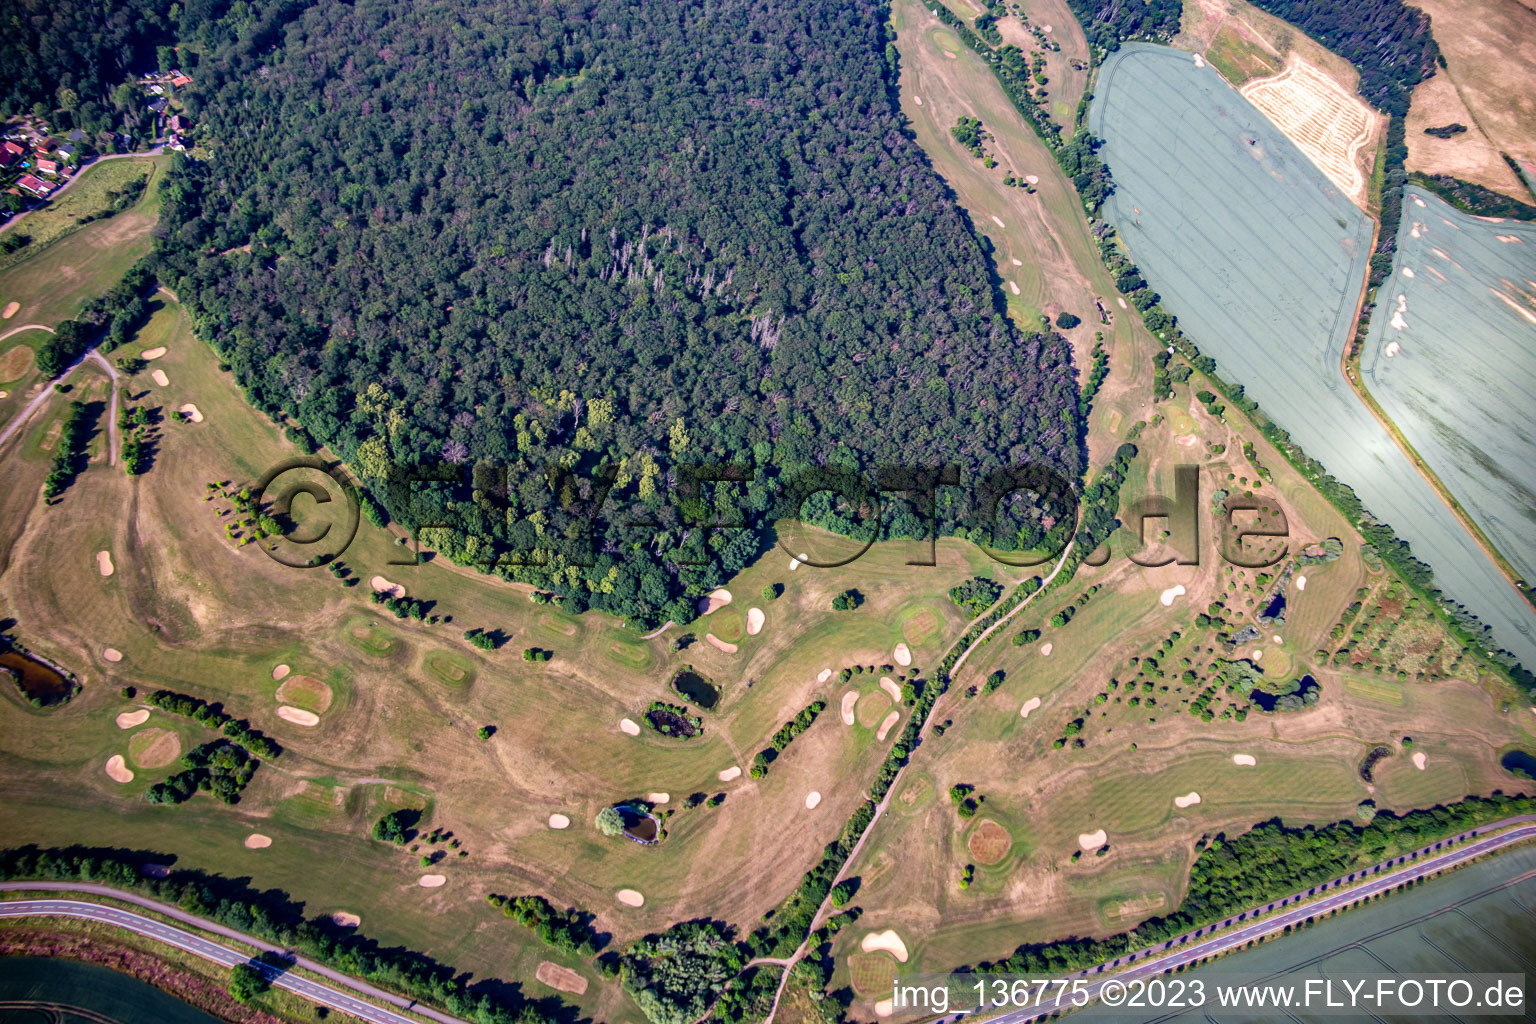 Club de golf Château Meisdorf eV à le quartier Meisdorf in Falkenstein dans le département Saxe-Anhalt, Allemagne vue d'en haut